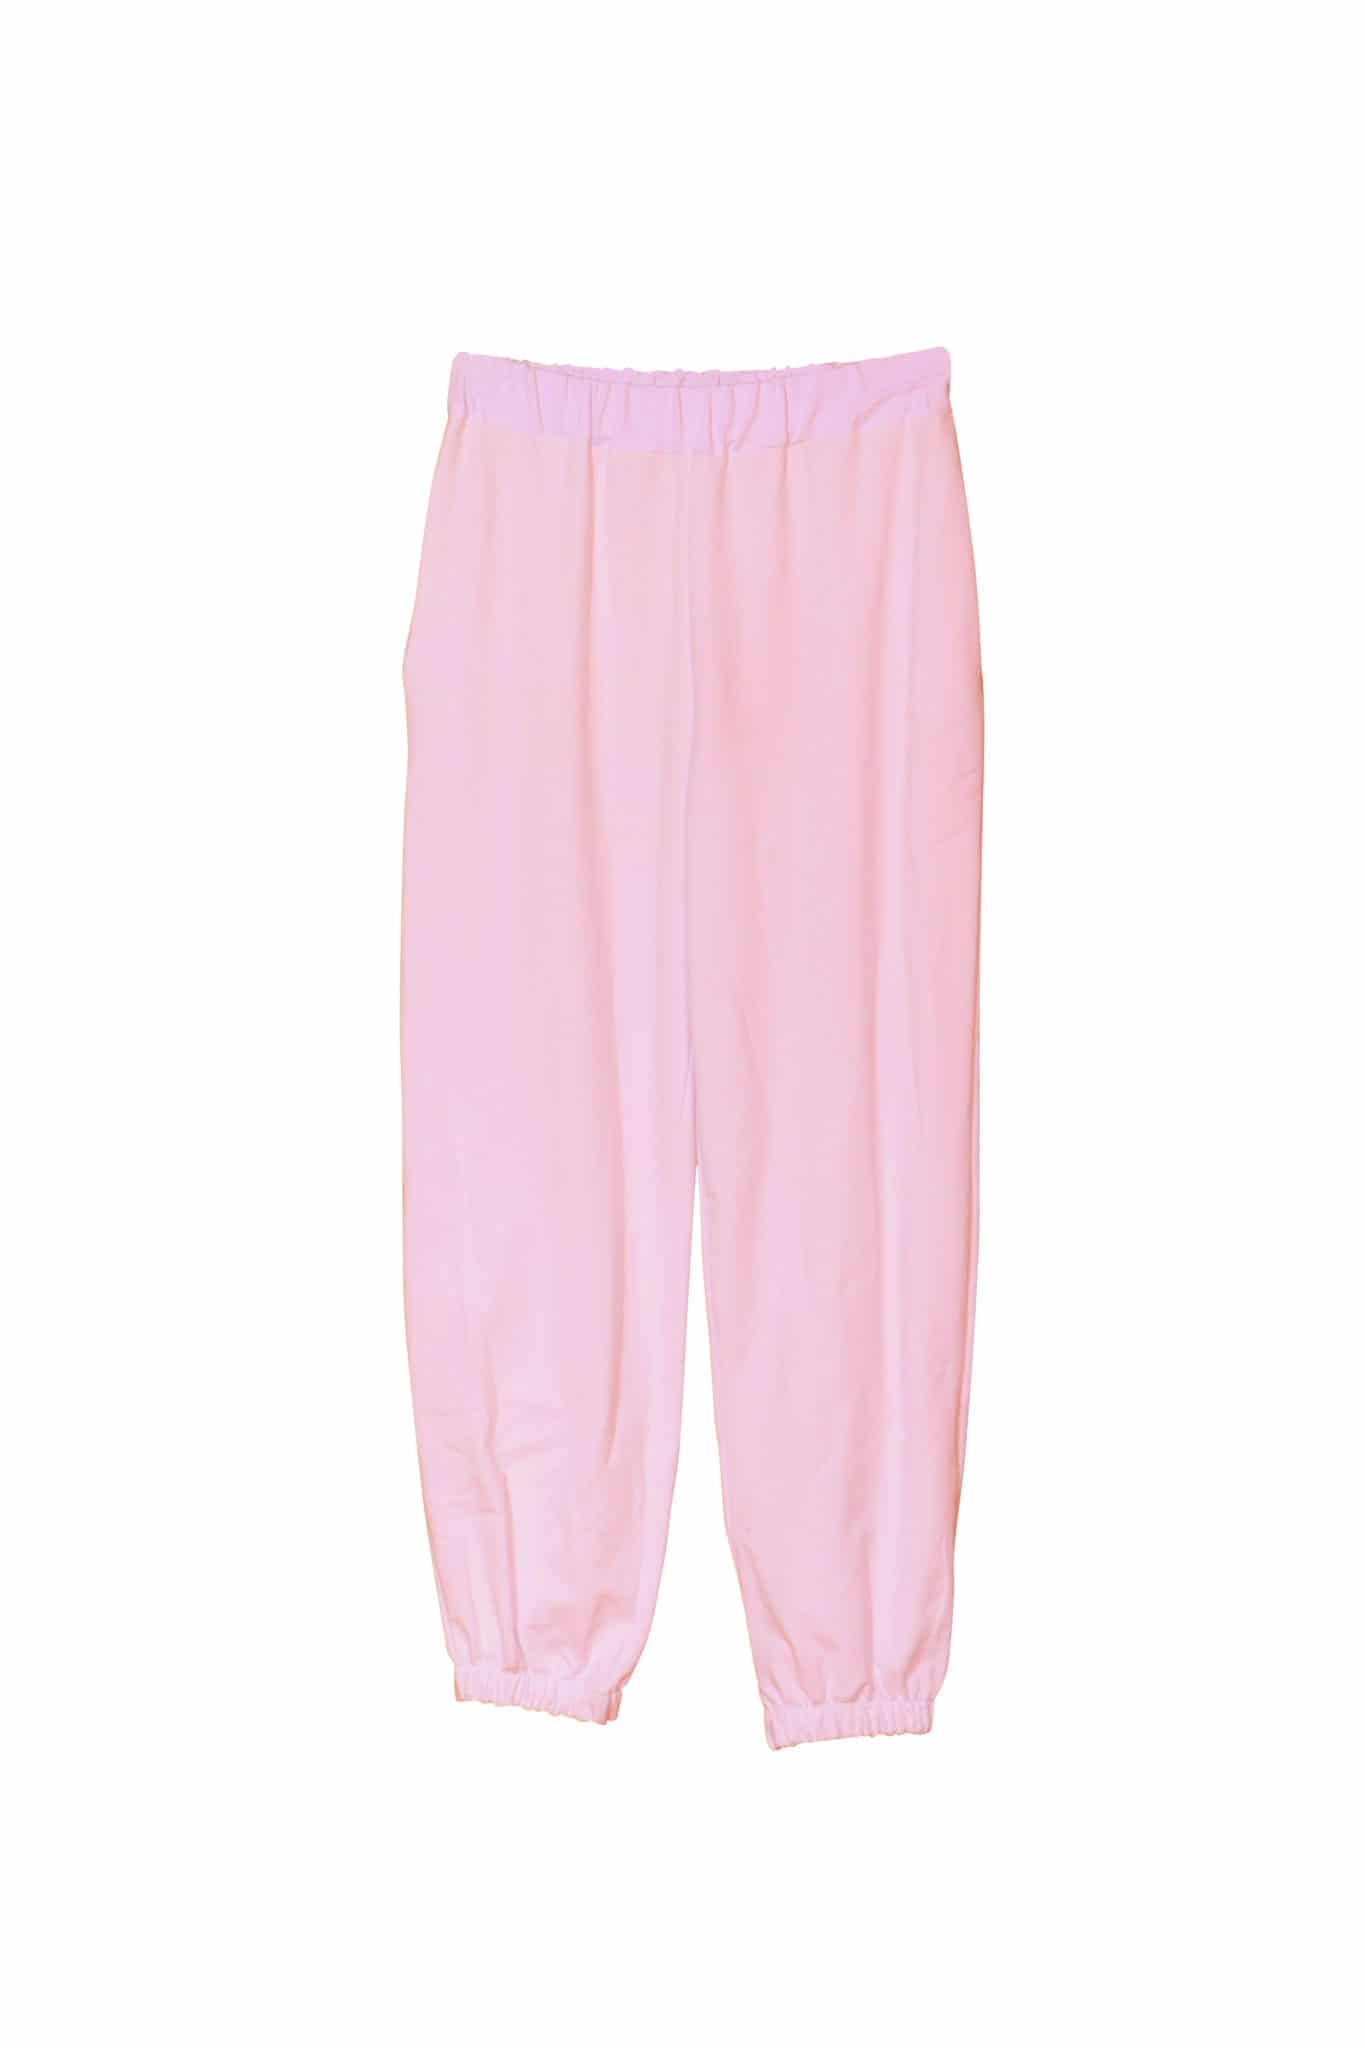 pantalon jogging molleton rose taille élastiqué photo buste